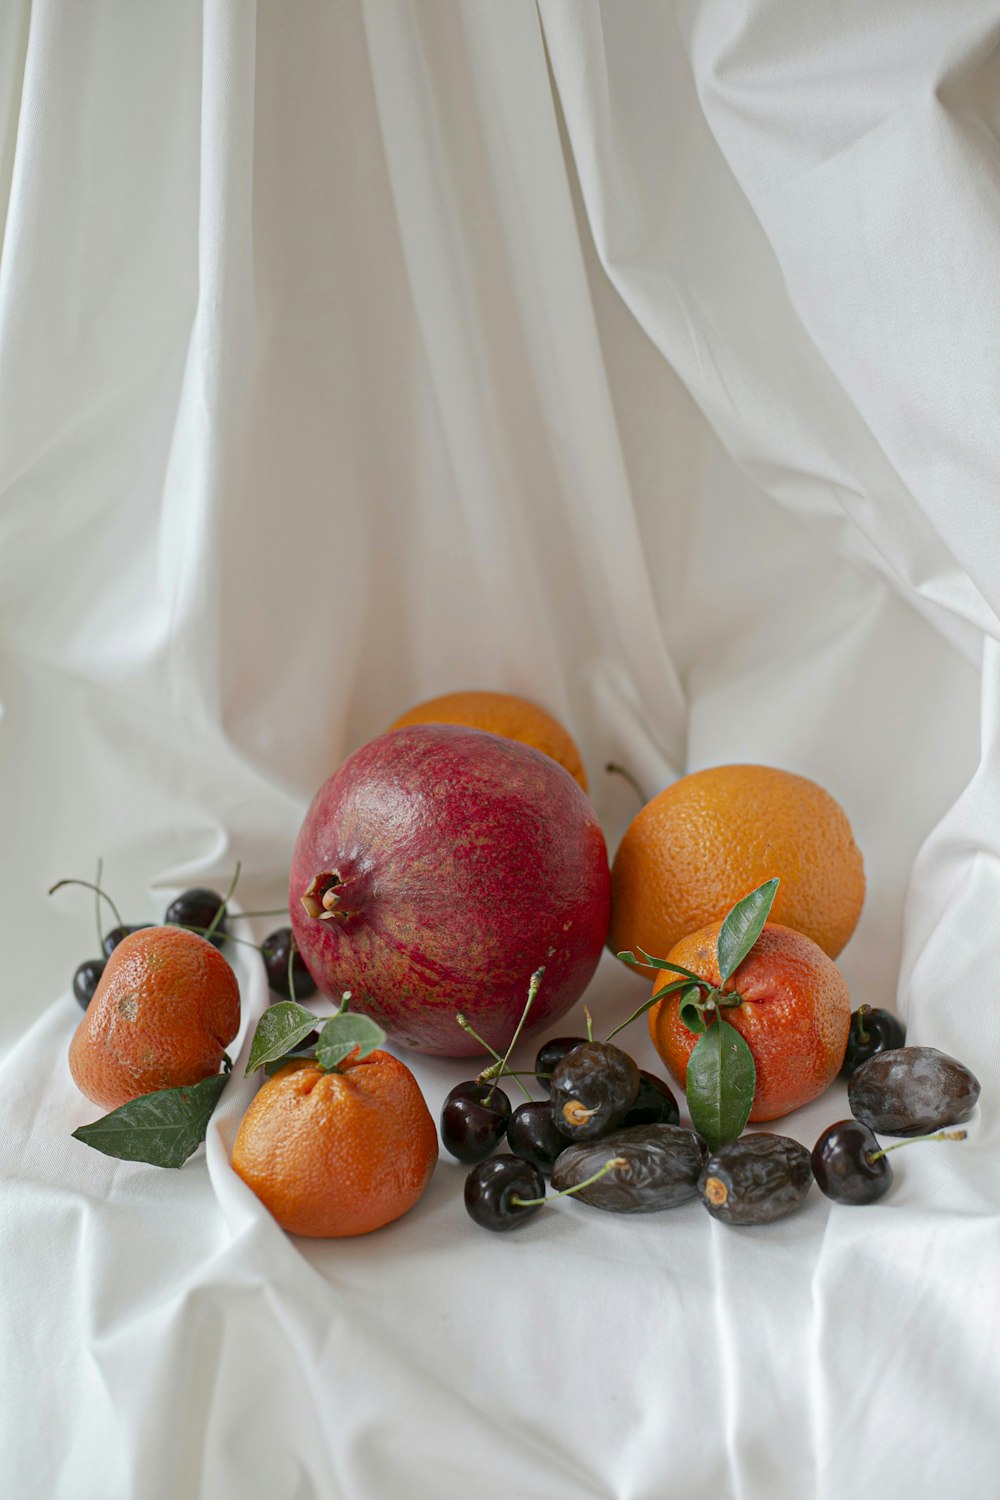 흰색 섬유에 오렌지 과일과 검은 딸기